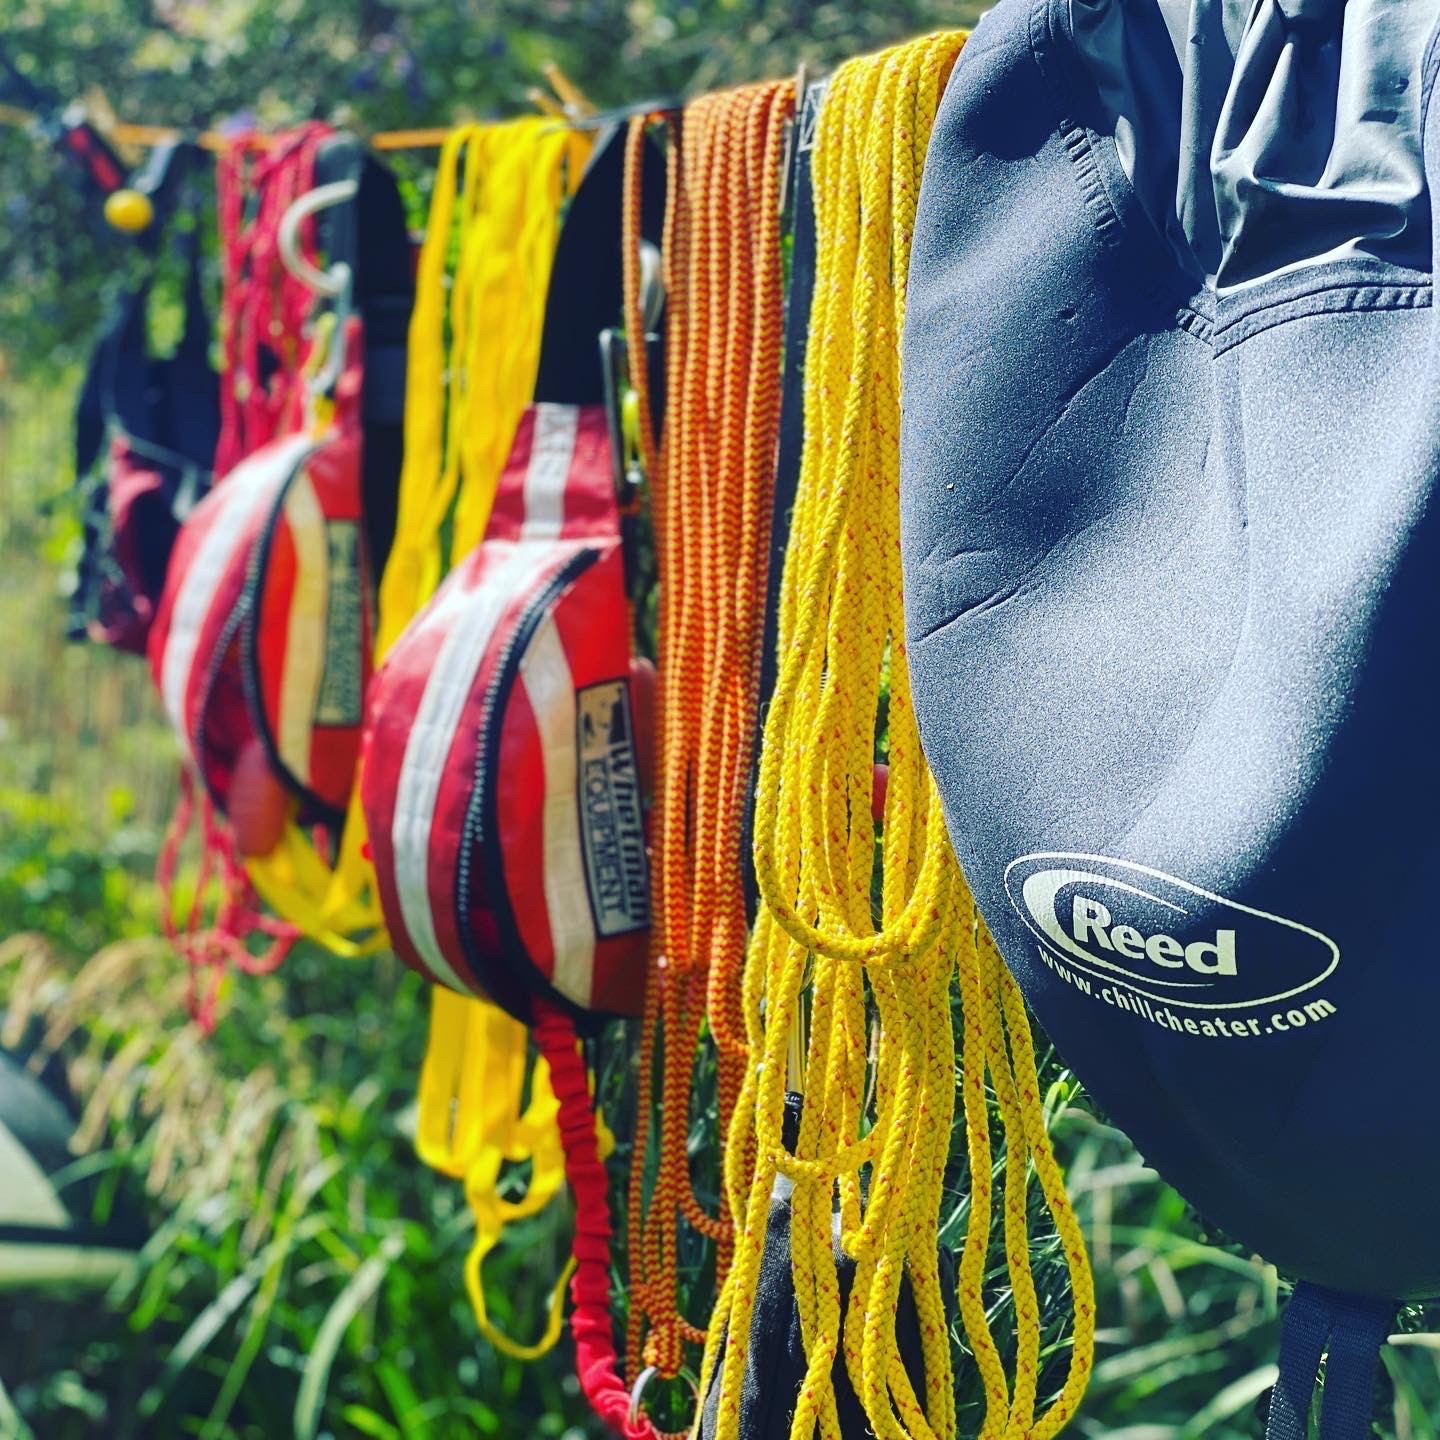 Kayaking equipment drying after rinsing.